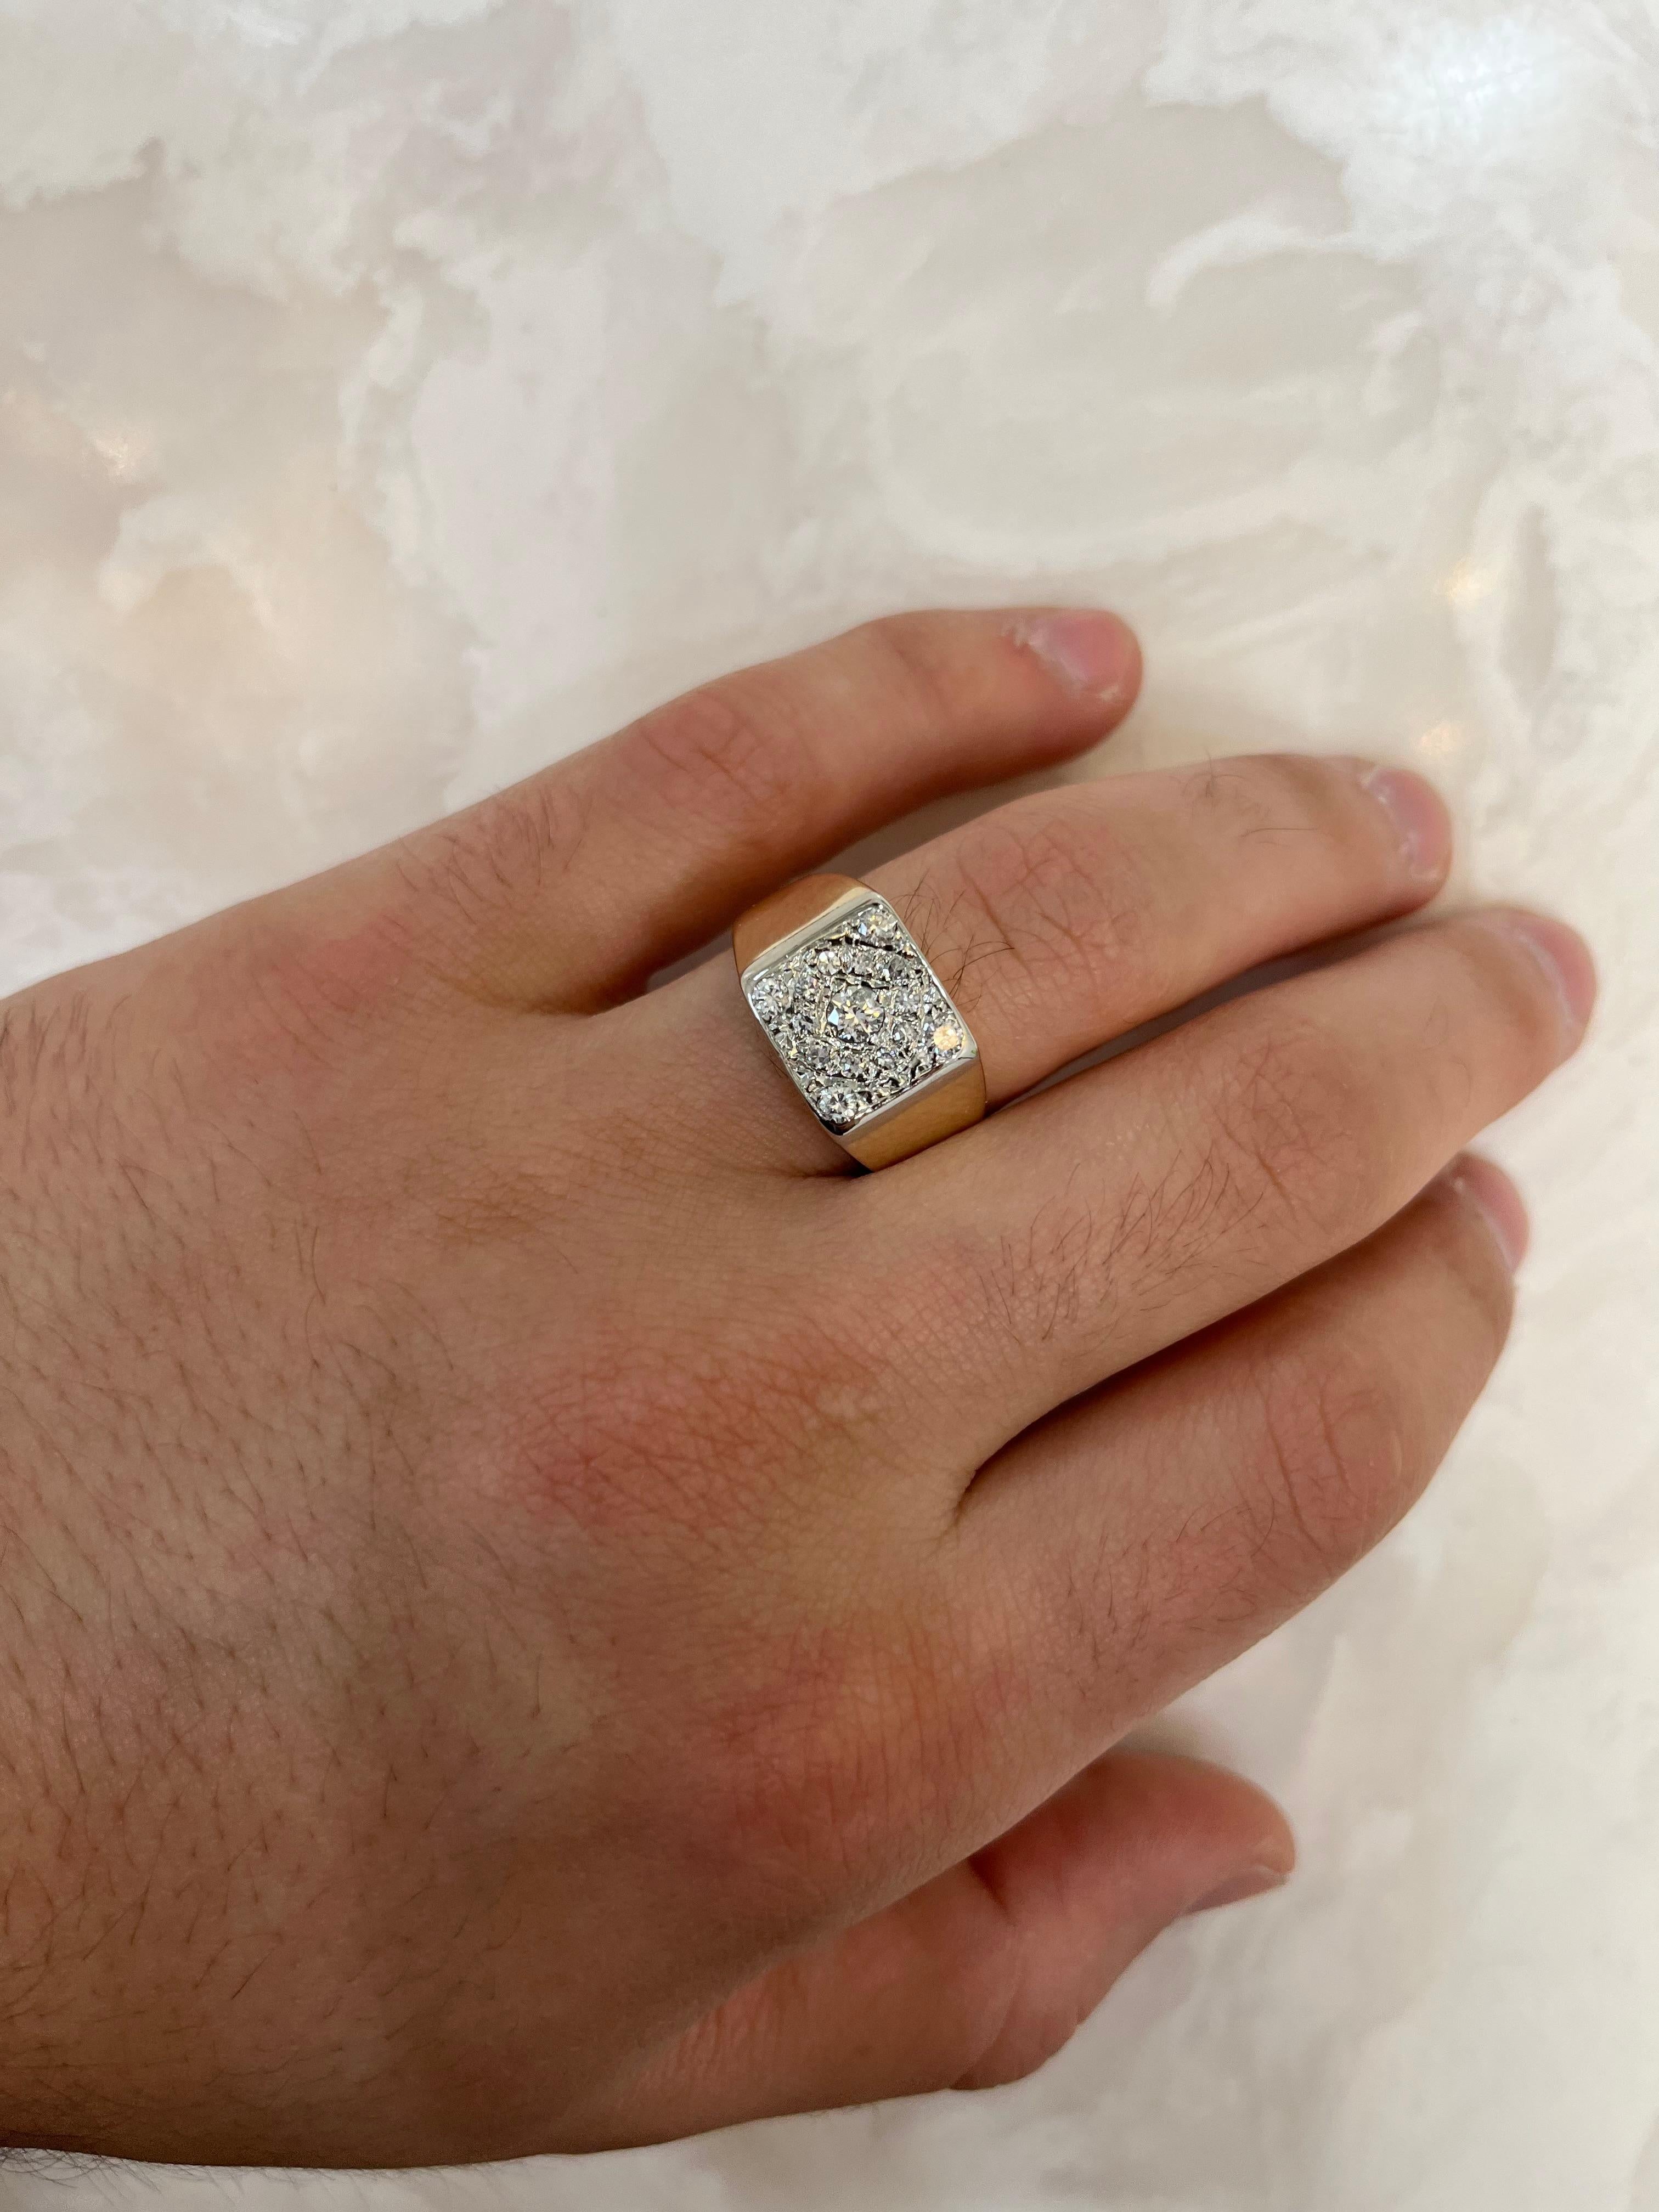 Handgefertigter Diamant-Cluster-Ring in einer 10-karätigen Goldfassung mit glatter, doppelt rhodinierter Oberfläche. Alle Steine sind natürliche, hervorragend geschliffene, natürliche Diamanten. Augenrein und farblos. 

Dieser Ring wurde für ein